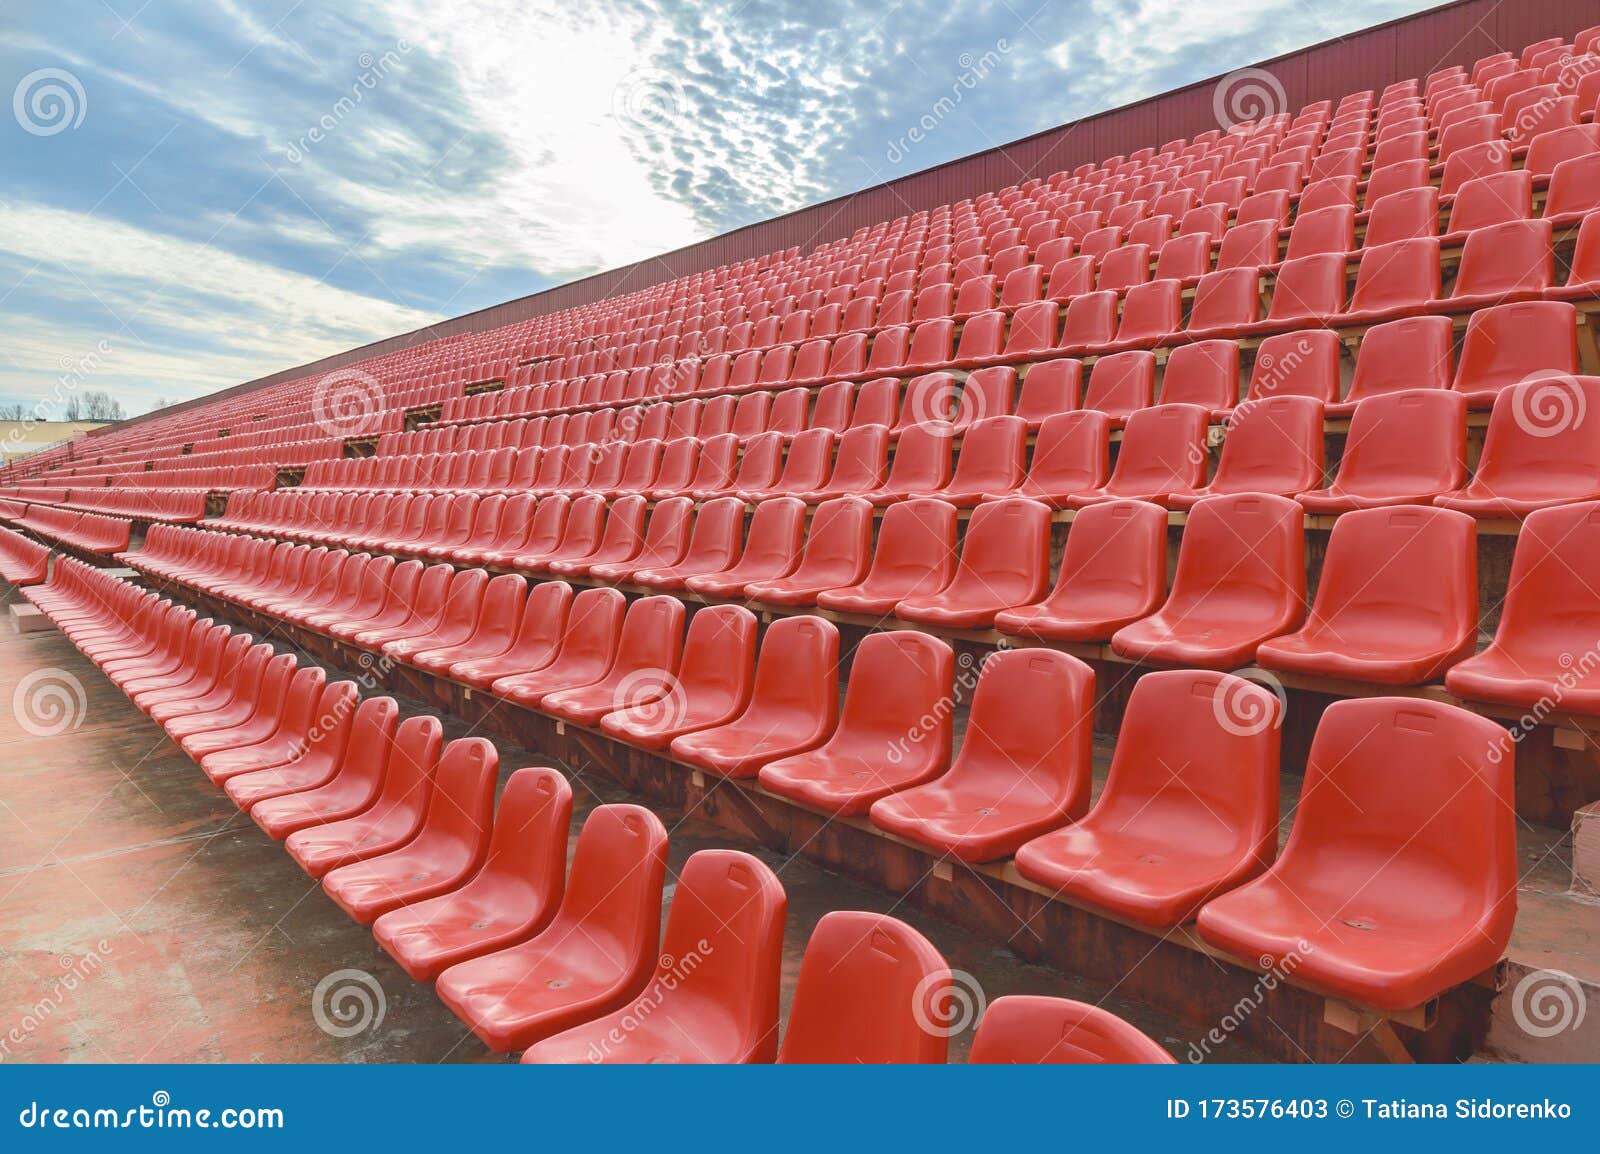 Spectator Bleachers on an Open Soccer Field. Stadium for Summer ...